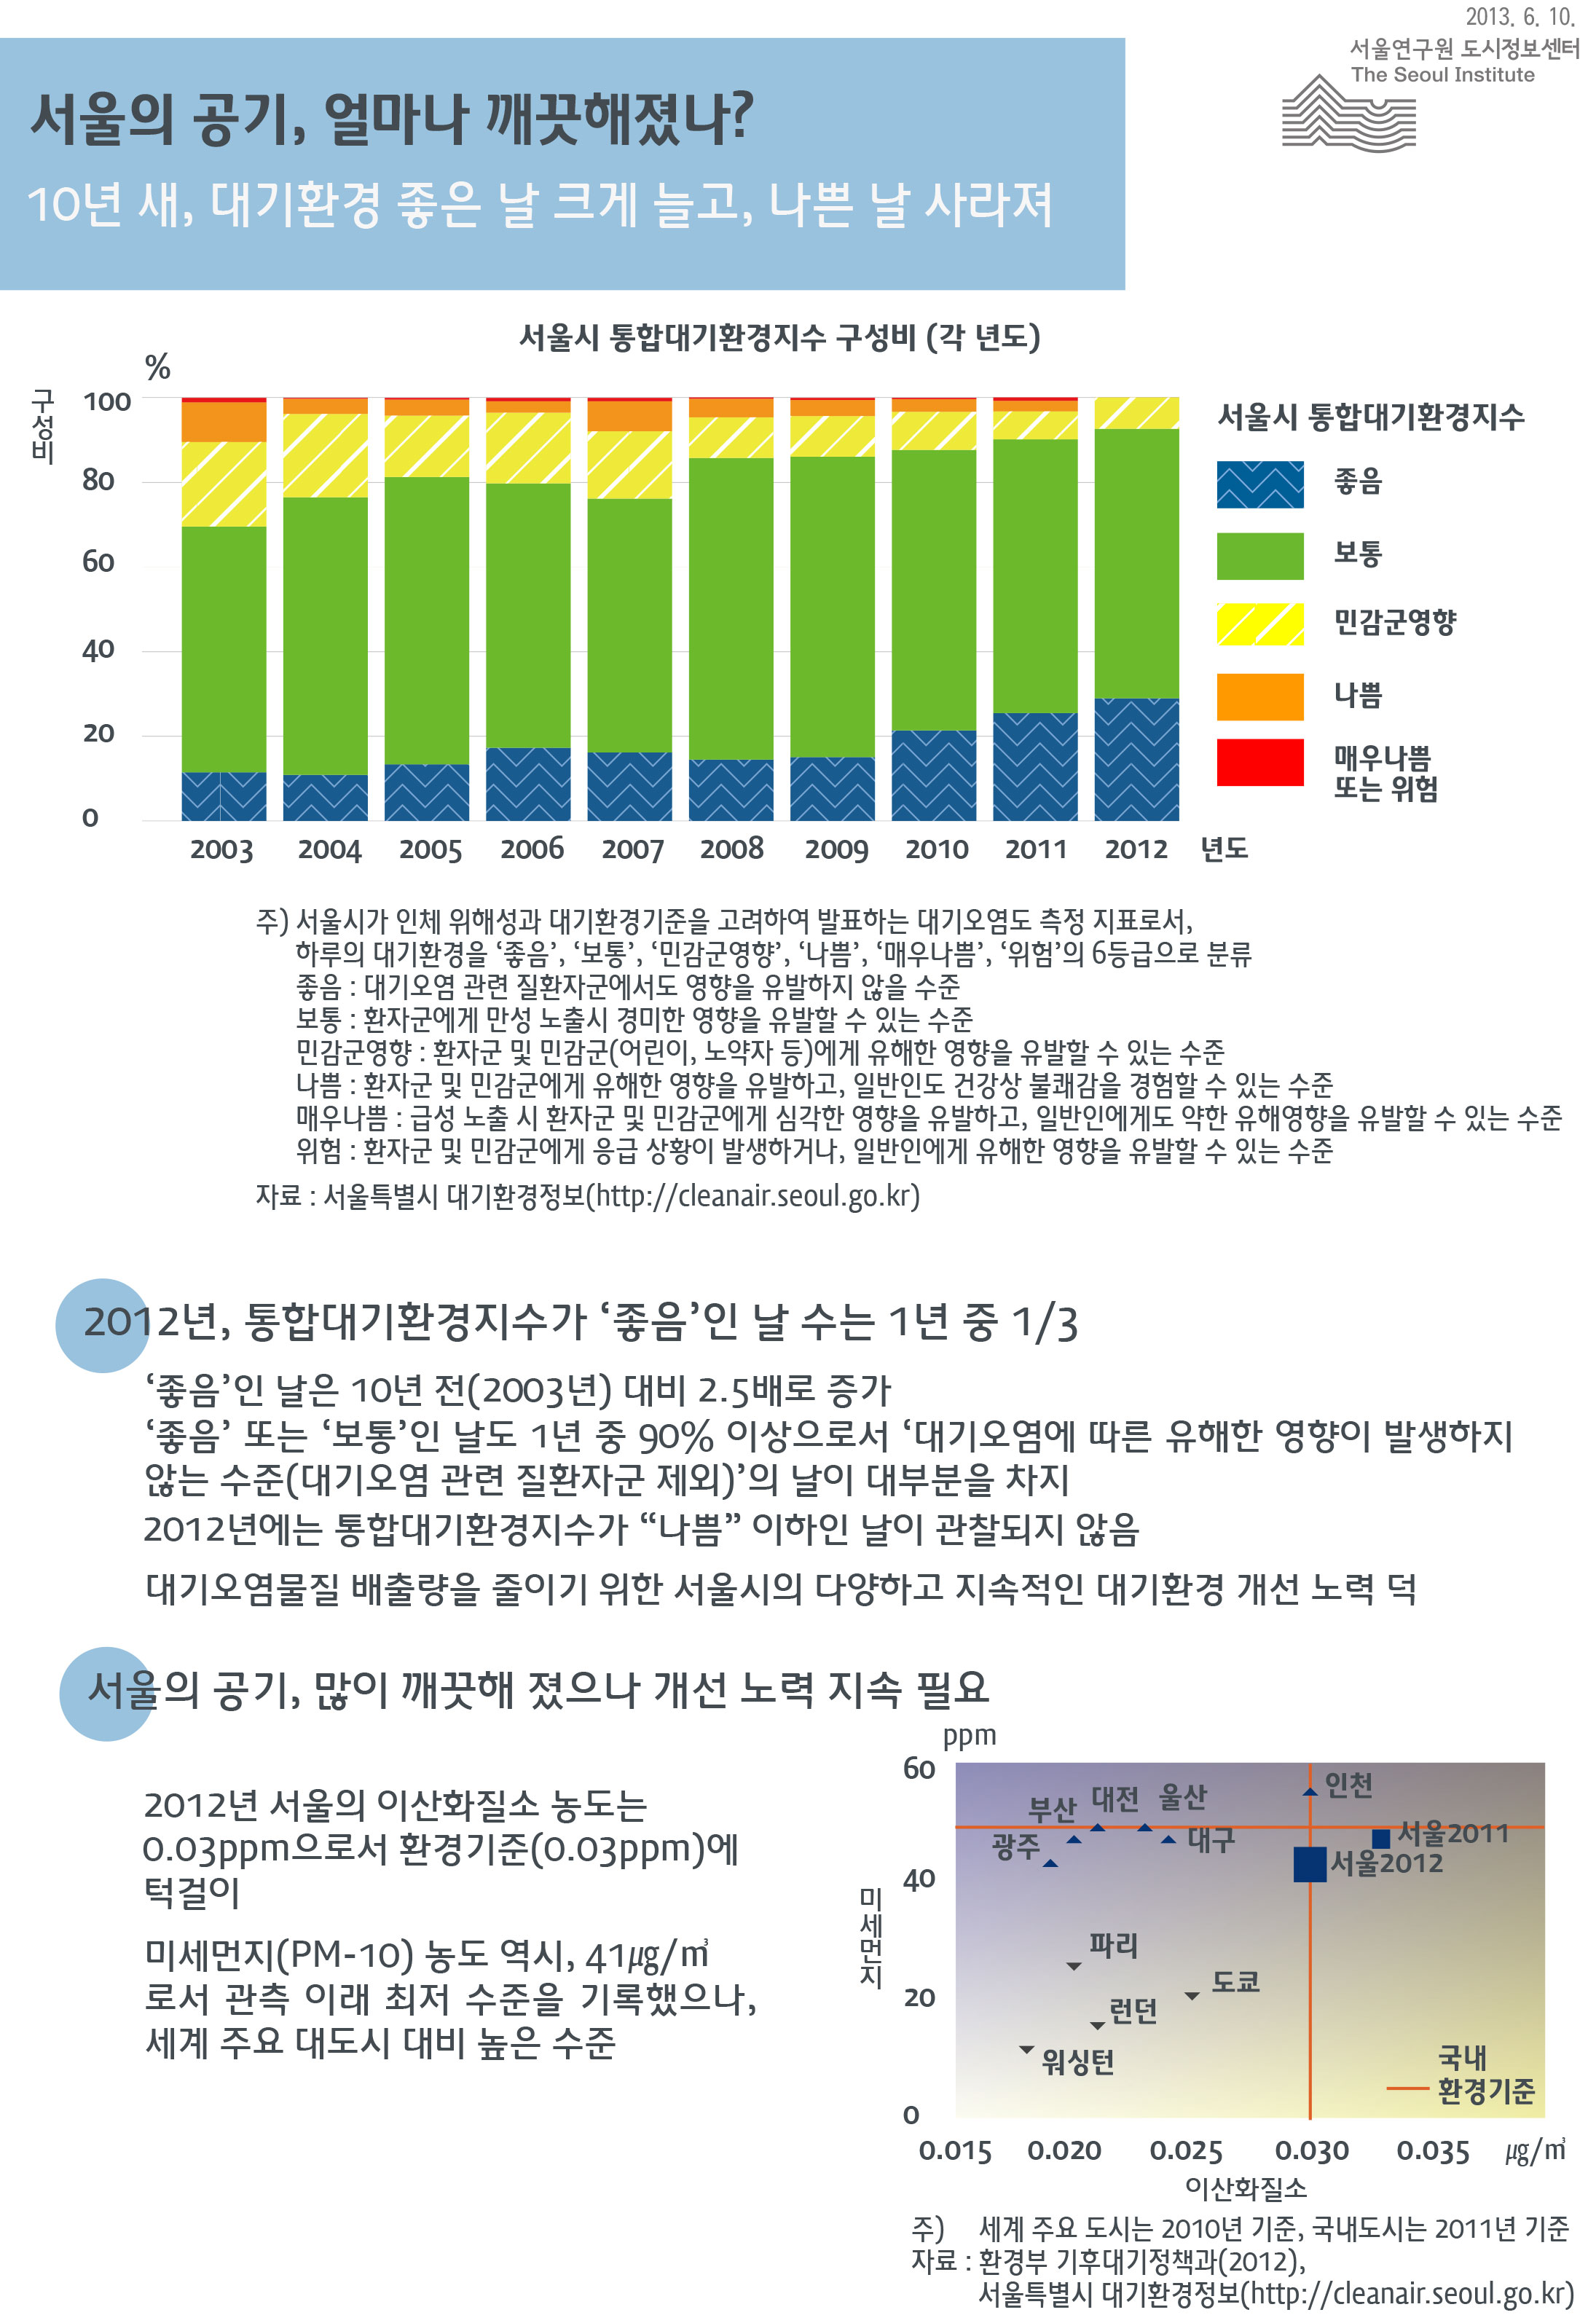 서울의 공기, 얼마나 깨끗해졌나? 서울인포그래픽스 제37호 2013년 6월 10일 대기가‘좋음’인 날은 10년 전(2003년) 대비 2.5배로 증가, '좋음’ 또는 ‘보통’인 날도 1년 중 90% 이상으로서 ‘대기오염에 따른 유해한 영향이 발생하지 않는 수준’의 날이 대부분을 차지, 또한 2012년에는 통합대기환경지수가 “나쁨” 이하인 날이 관찰되지 않음으로 정리될 수 있습니다. 인포그래픽으로 제공되는 그래픽은 하단에 표로 자세히 제공됩니다.